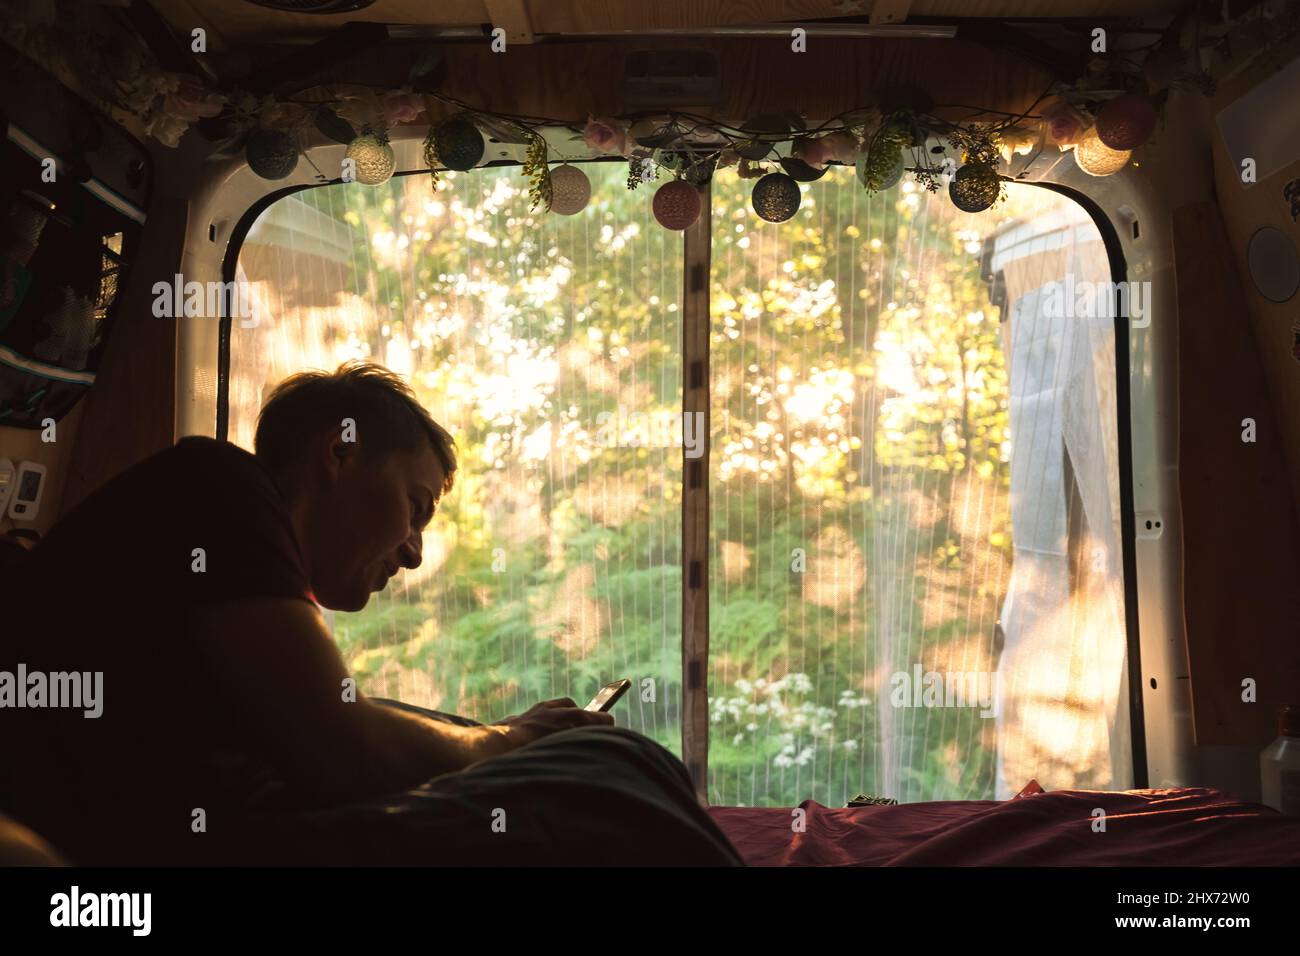 Giovane uomo che riposa in camper furgone Foto Stock